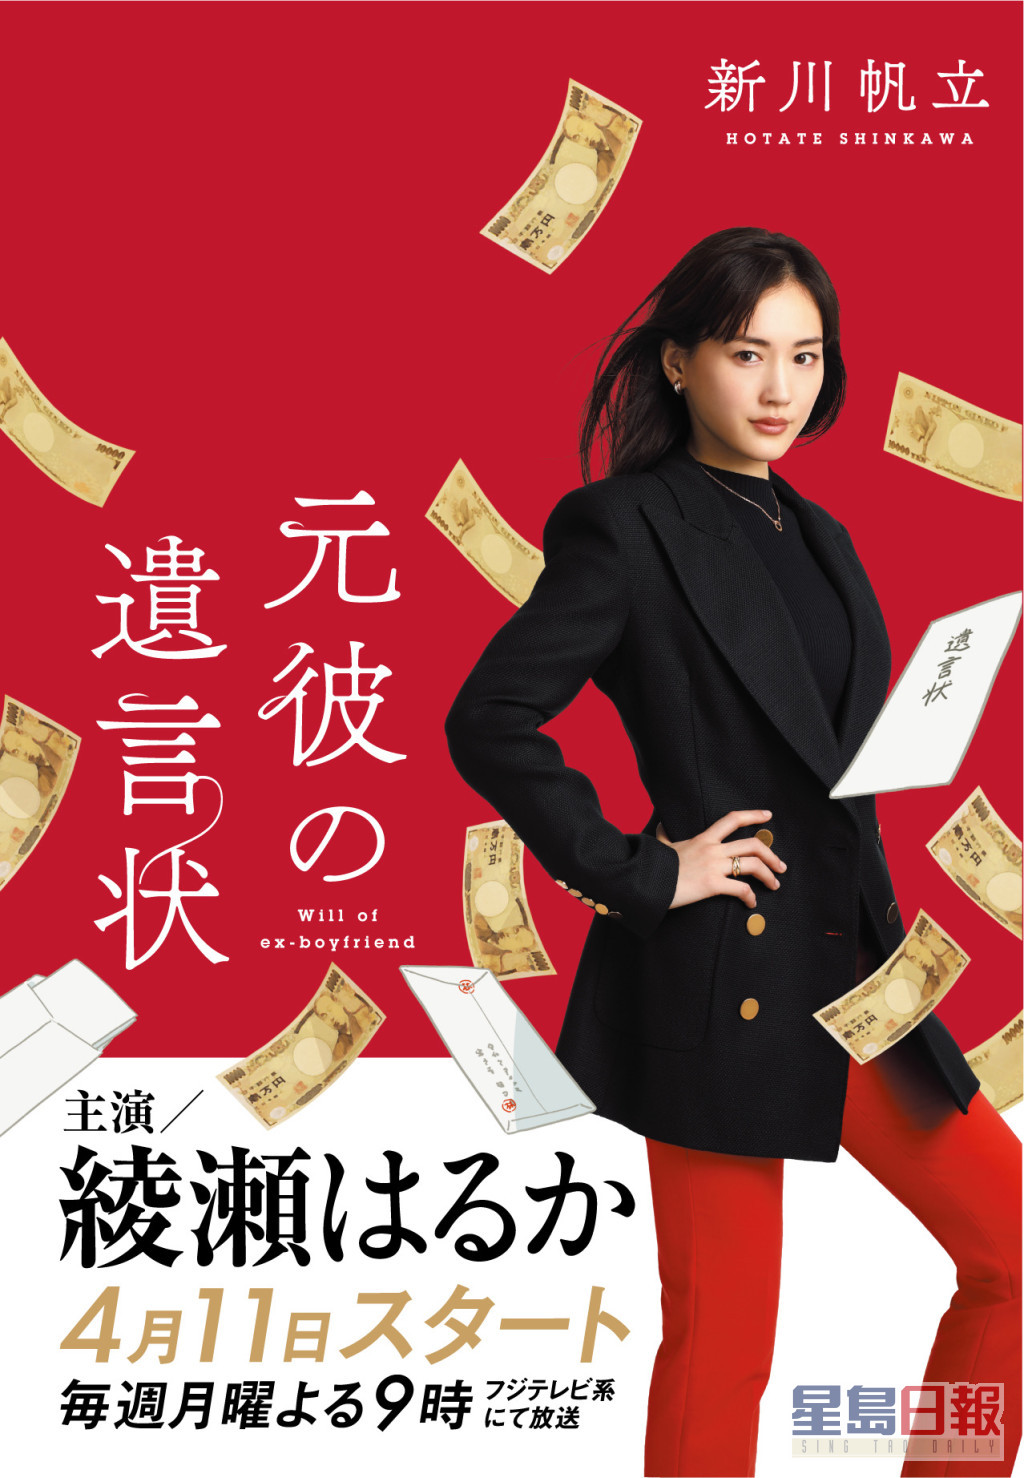 绫濑遥饰演优秀律师剑持丽子。